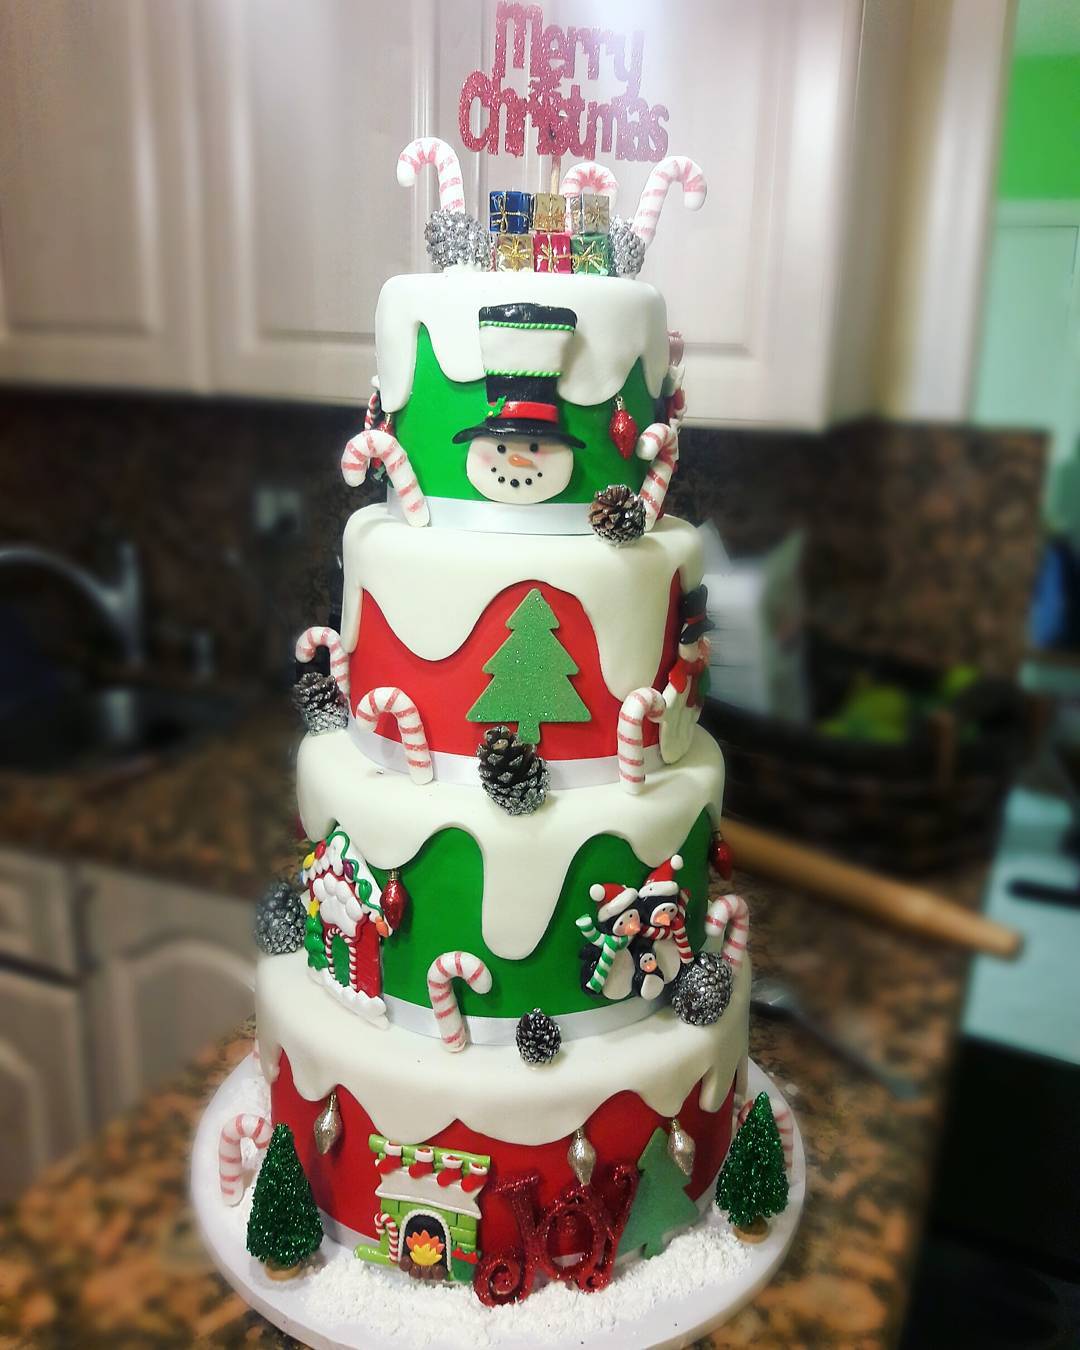 #christmascakes #miamicakes #miamiparties #fondantcakes #christmasparty